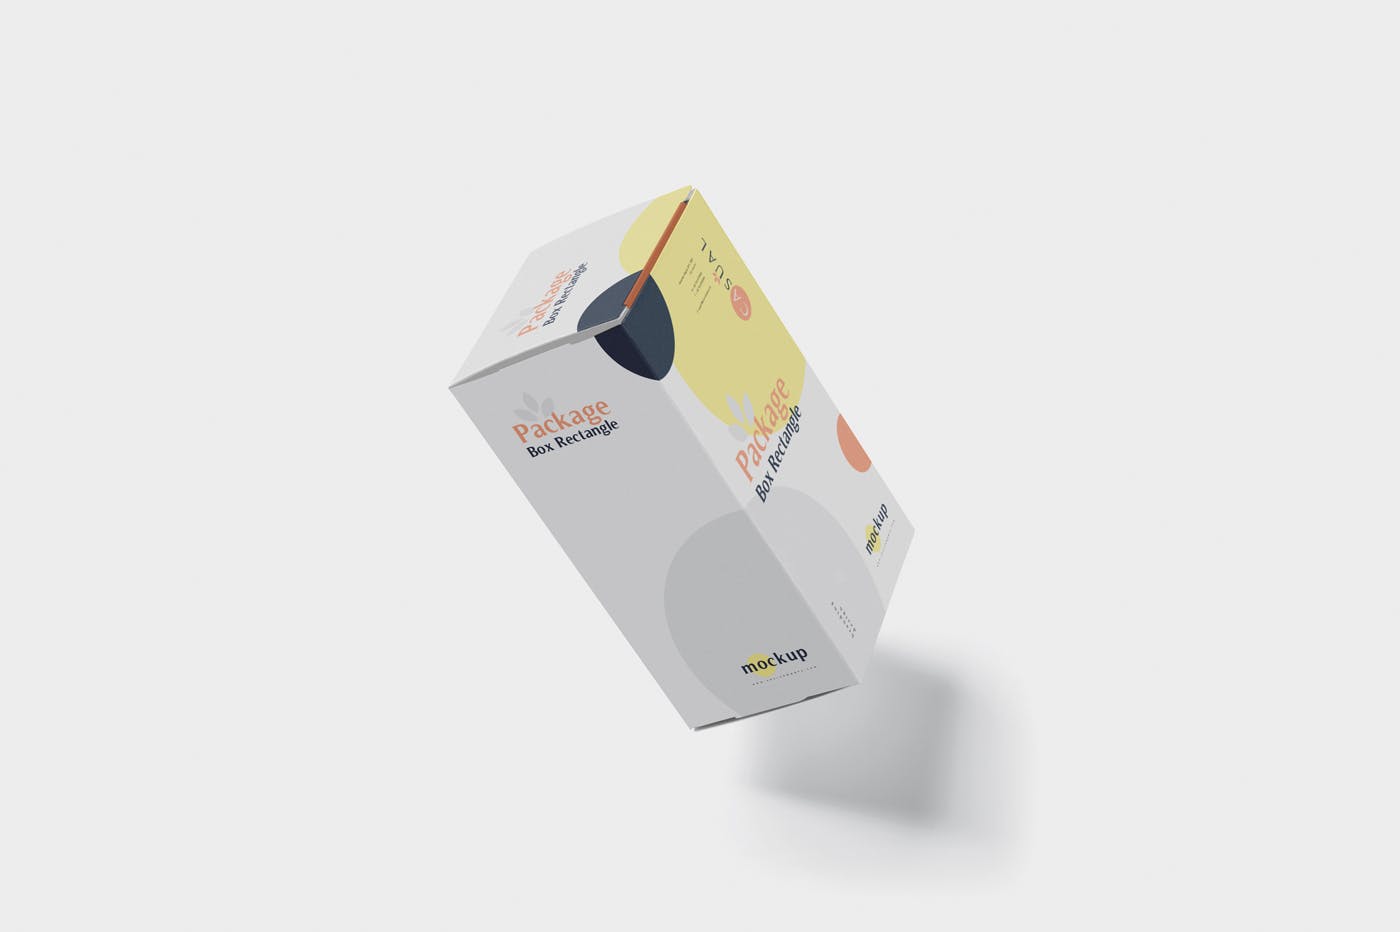 矩形产品包装盒外观设计效果图样机 Package Box Mock-Up – Rectangle插图(5)